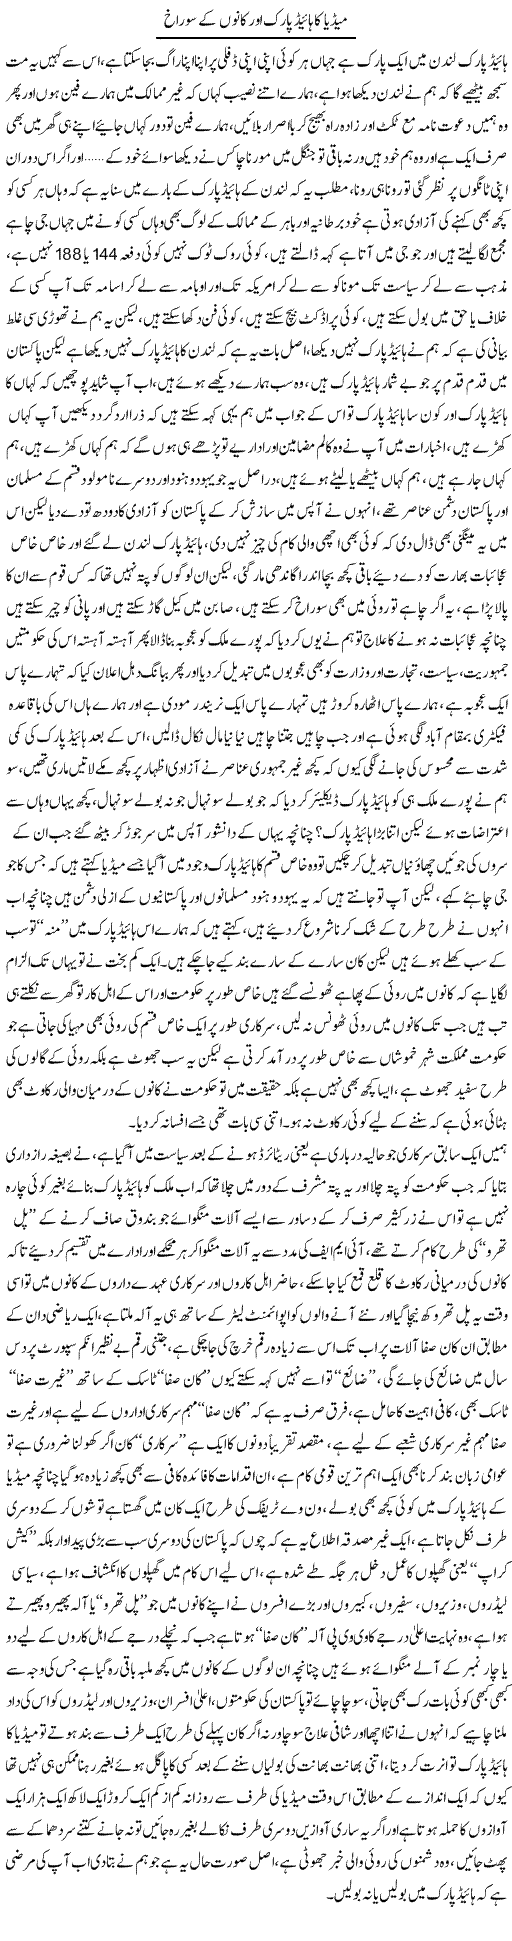 Media Ka Hide Park Aor Kano Ke Sorakh | Saad Ullah Jan Barq | Daily Urdu Columns